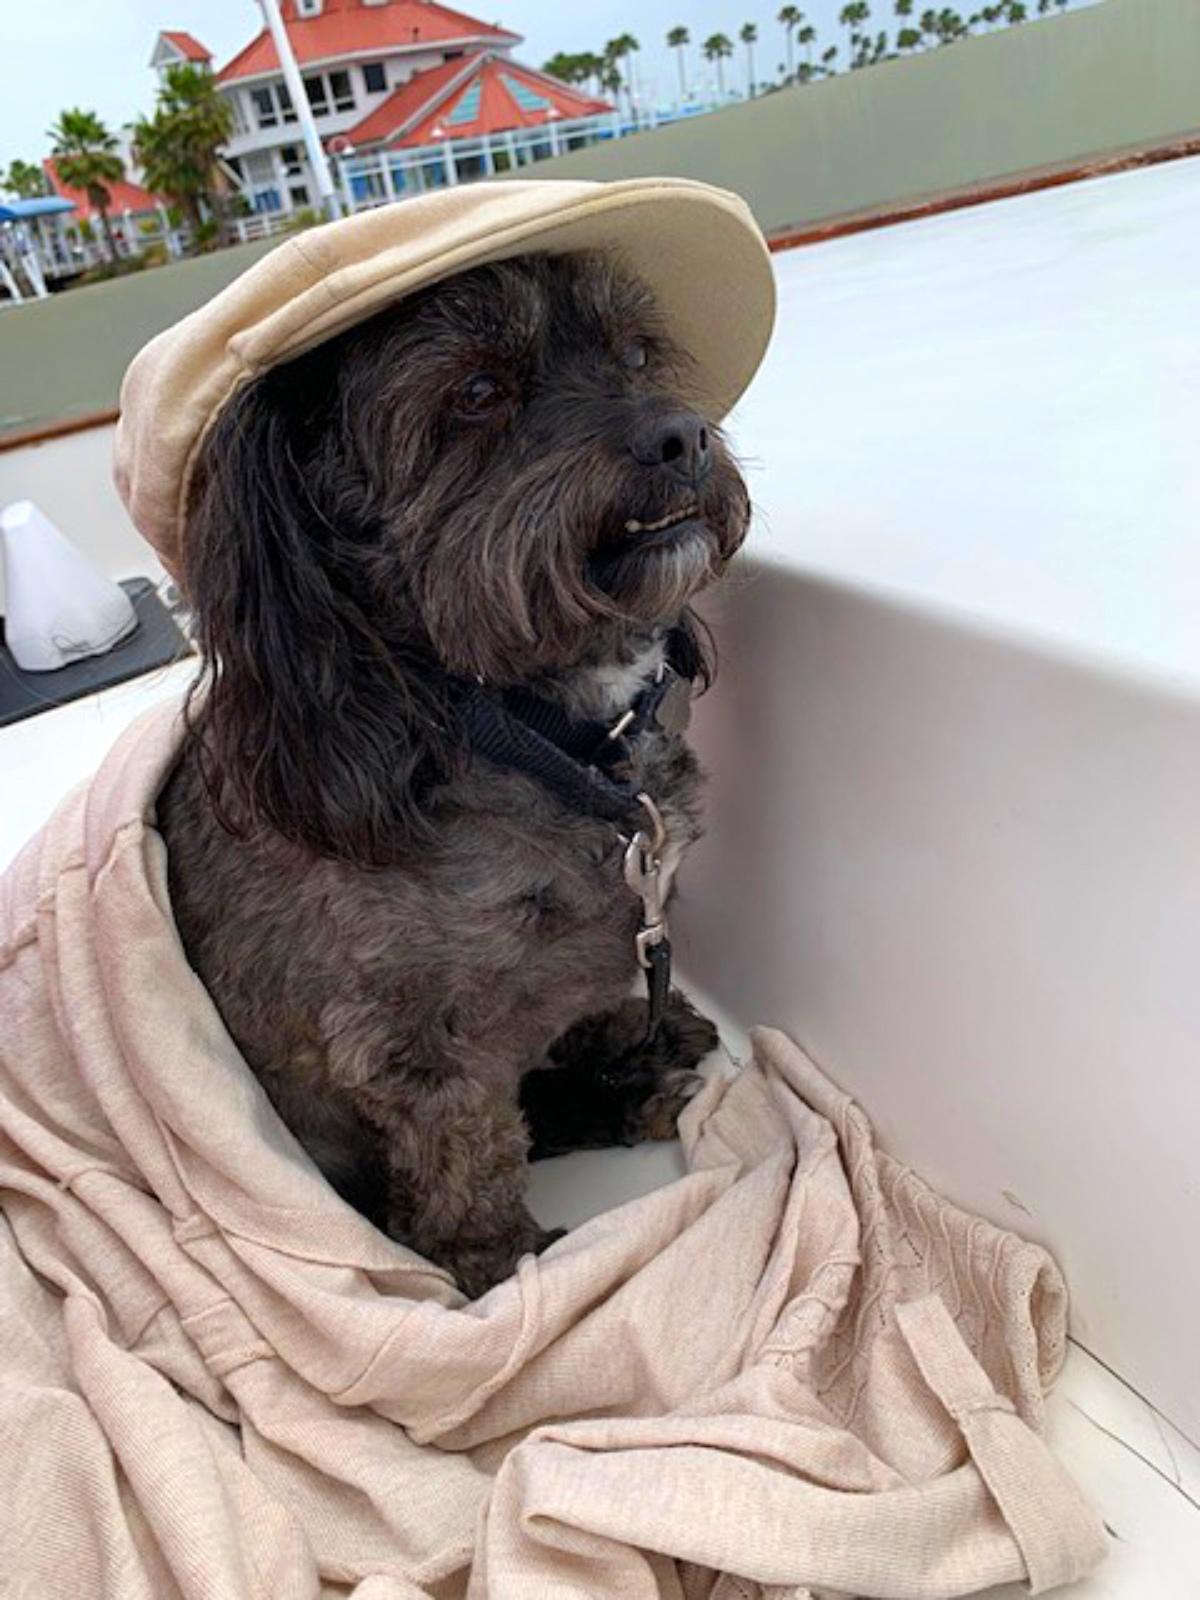 Dog loves boat rides